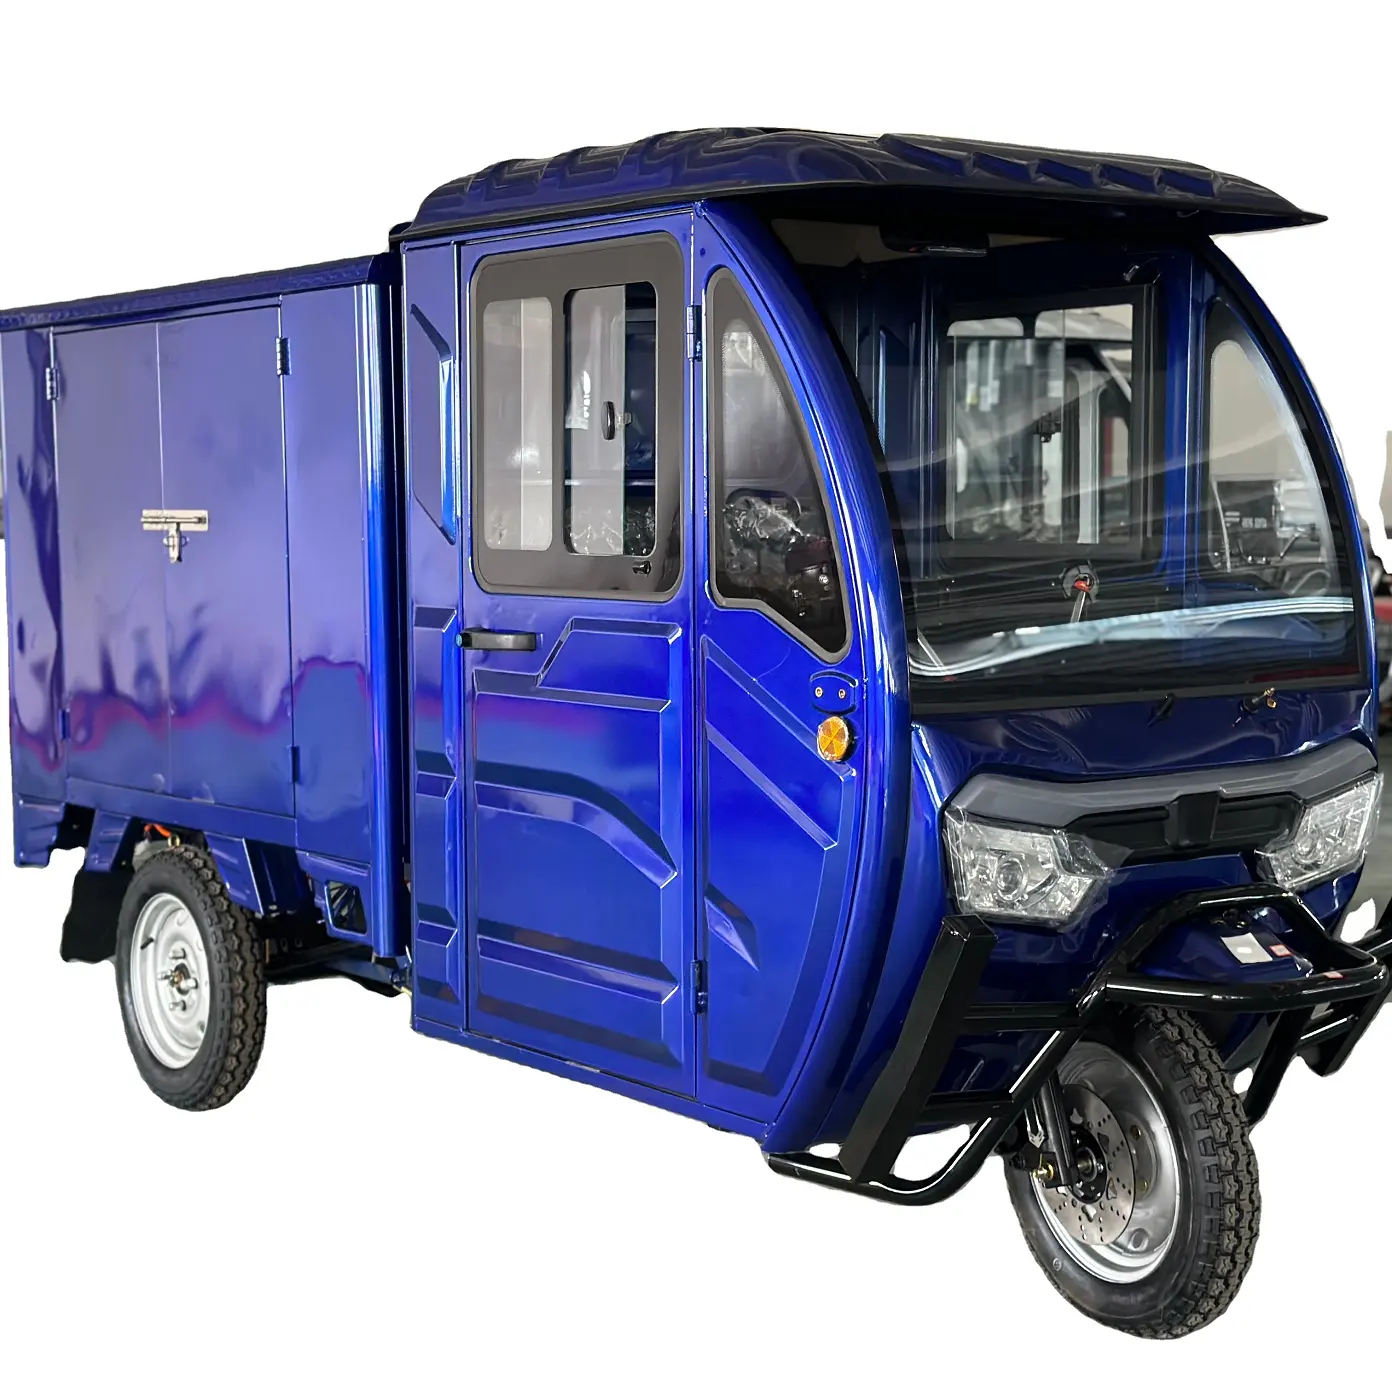 SAIGE COC kotak kabin muatan berat, kendaraan tiga roda elektrik 72V 58Ah 25km/jam EEC